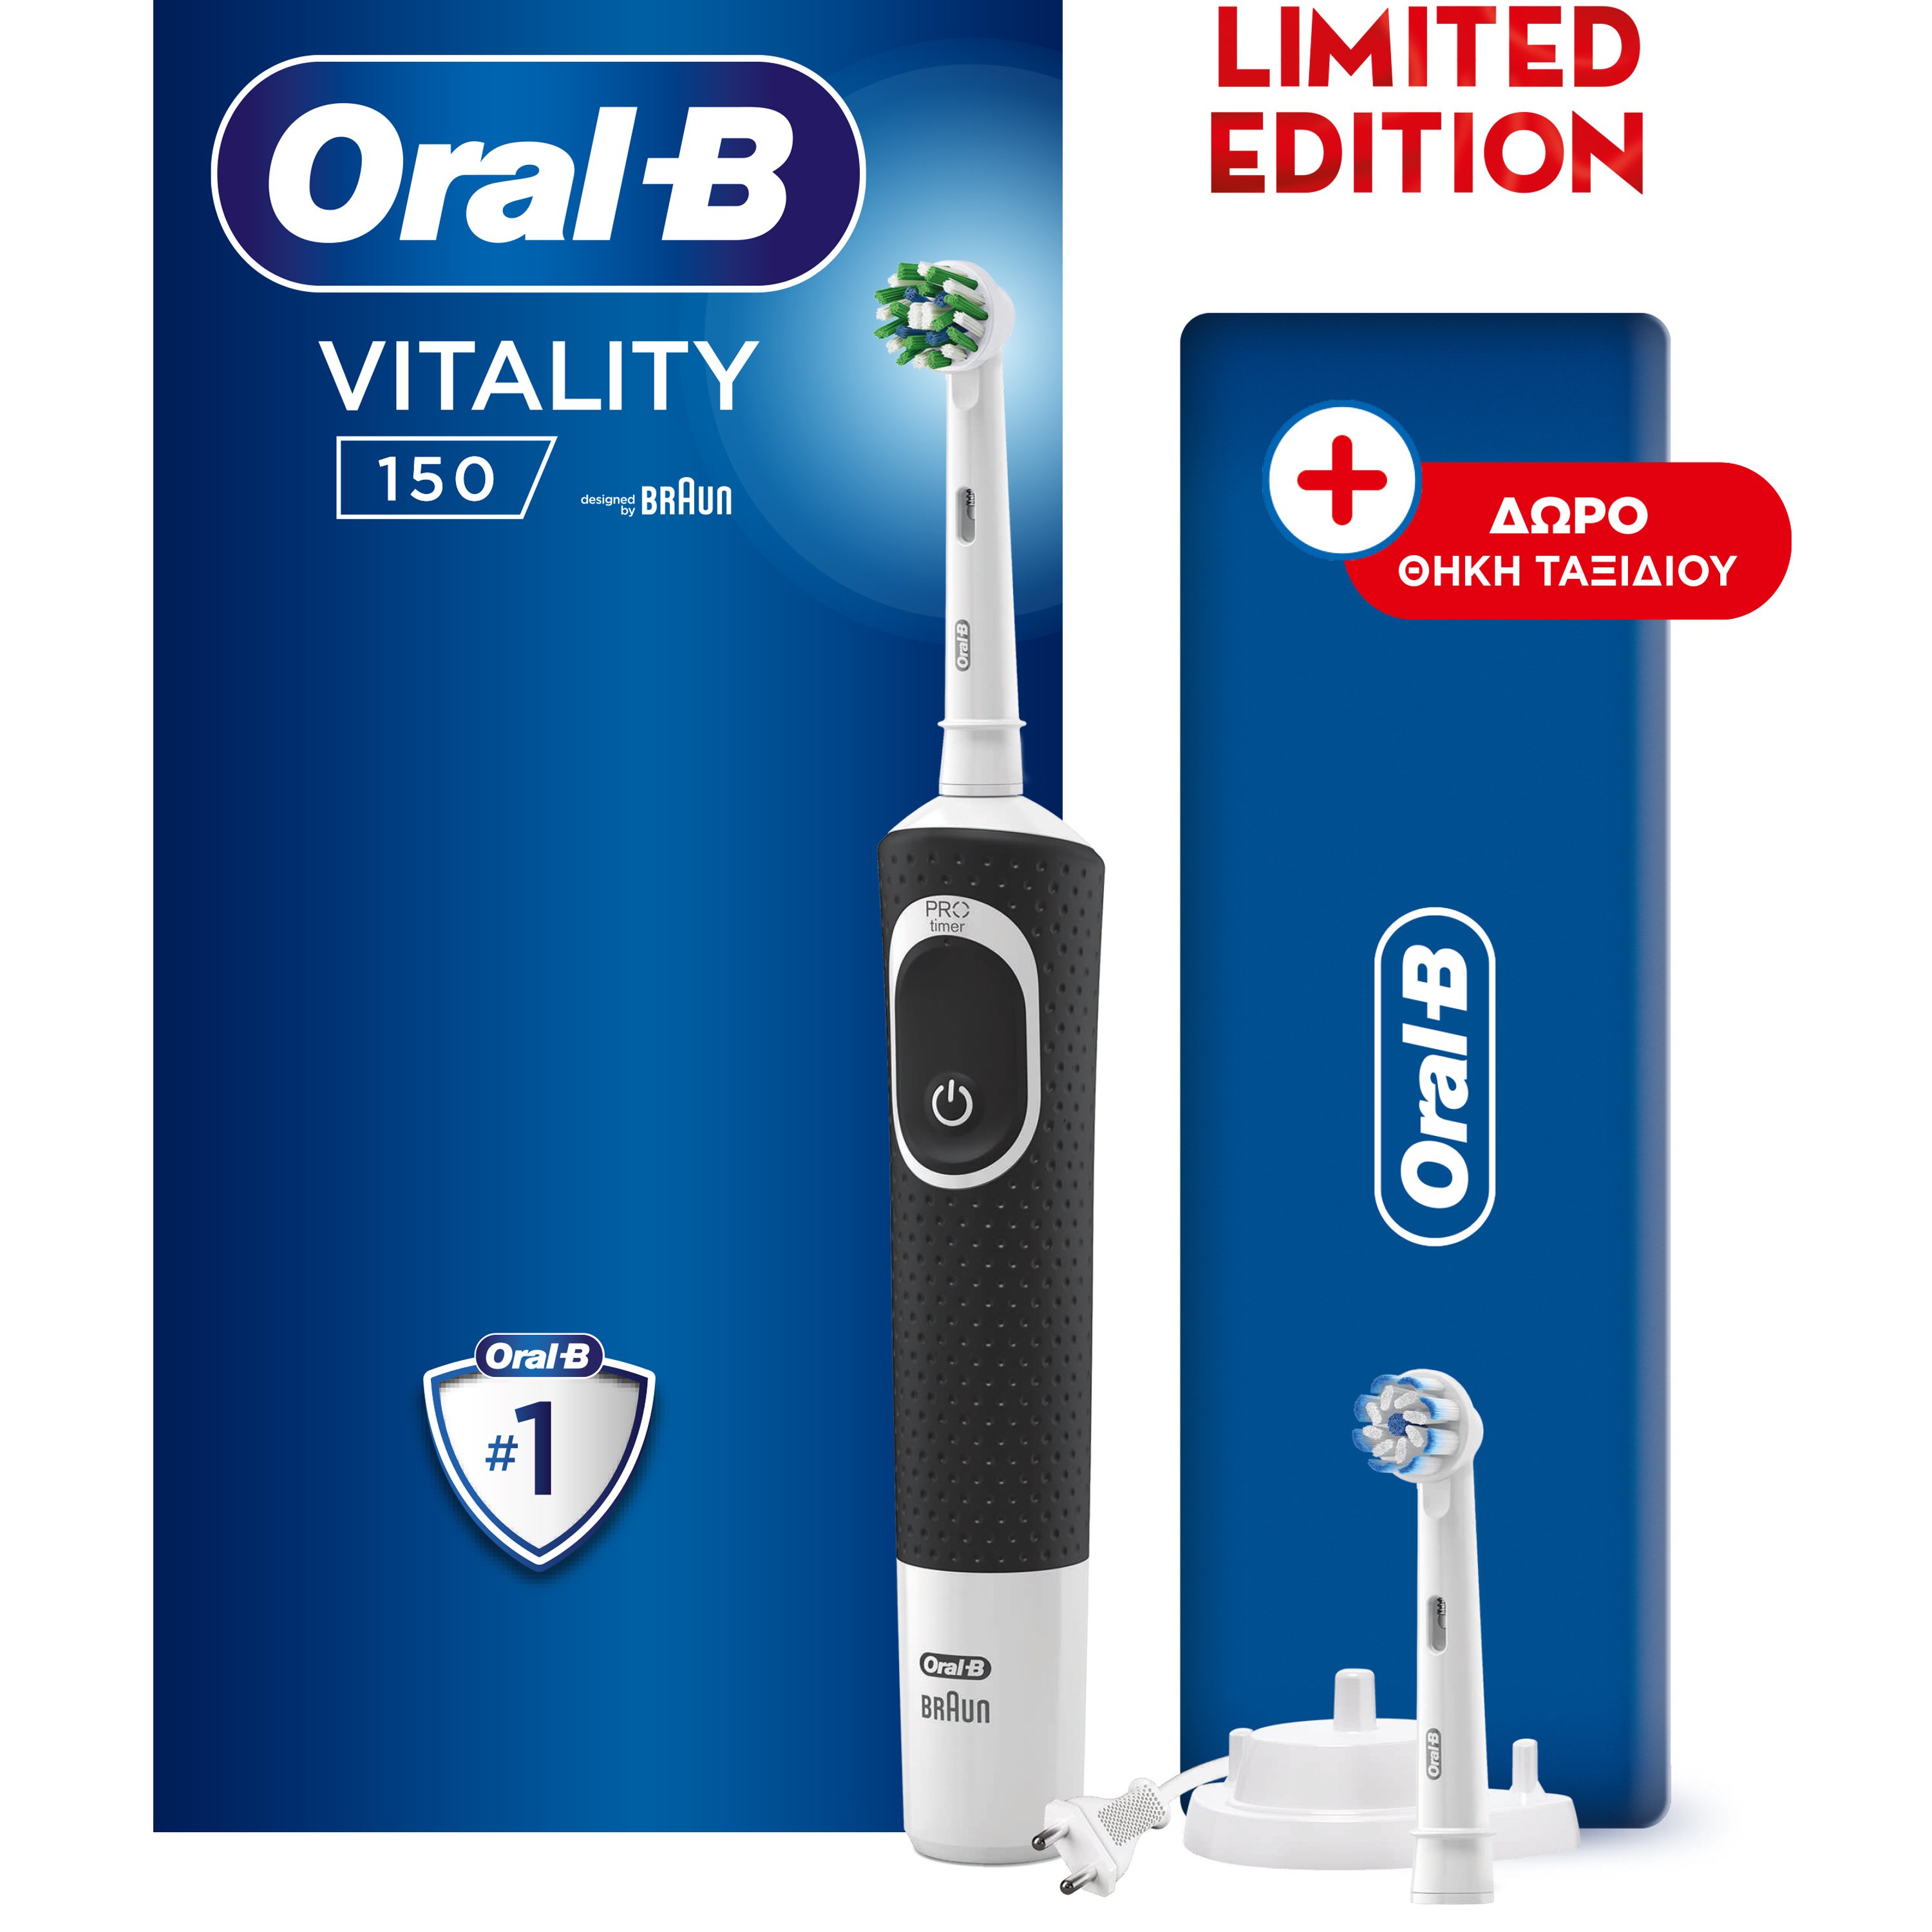 Oral-B Vitality 150 Ηλεκτρική Οδοντόβουρτσα Μαύρο 1 Τεμάχιο & Δώρο Θήκη Ταξιδίου Limited Edition